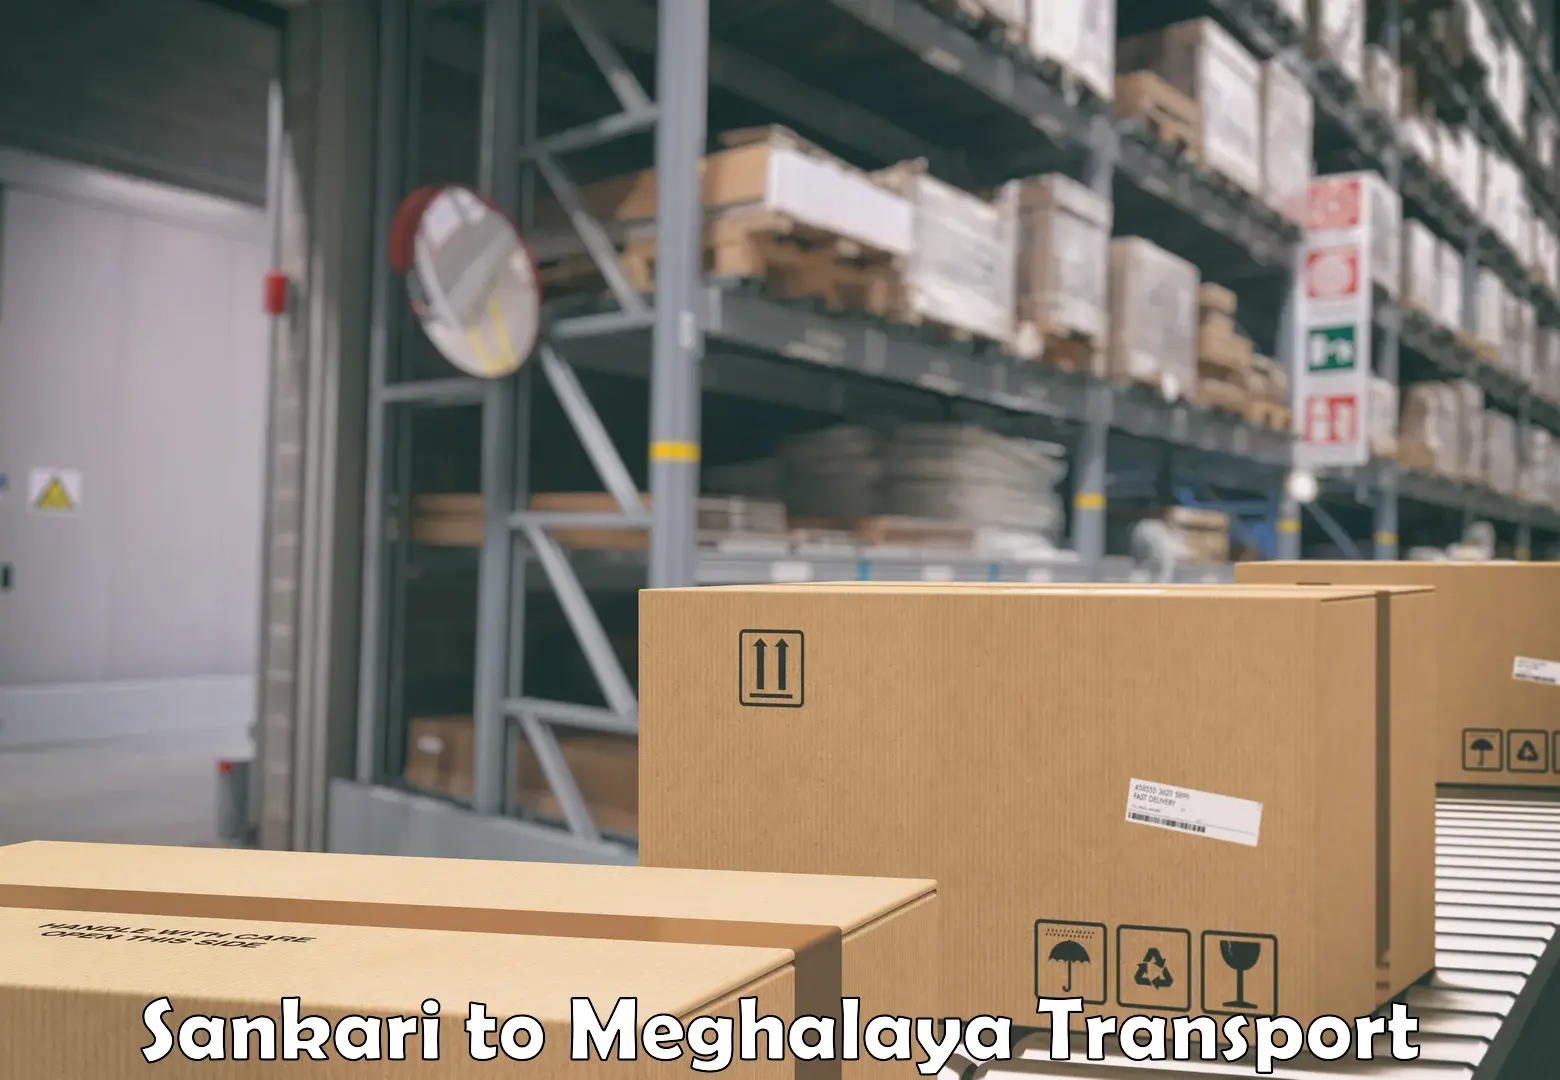 Furniture transport service Sankari to Meghalaya